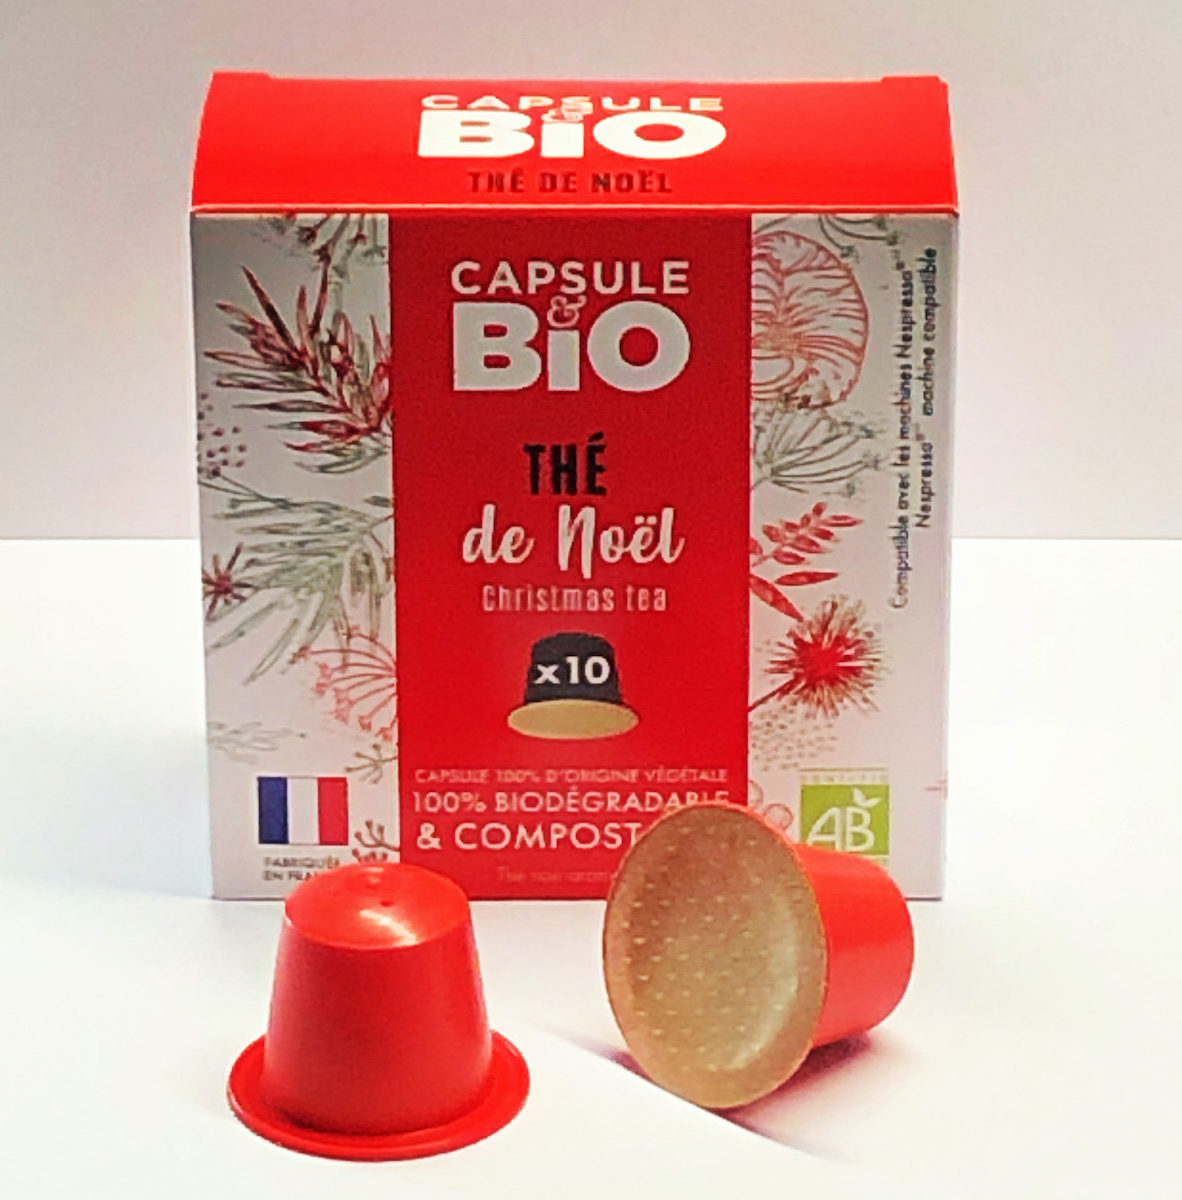 capsule thé de noel bio capsule compatible nespresso biodégradable fabriquée en france